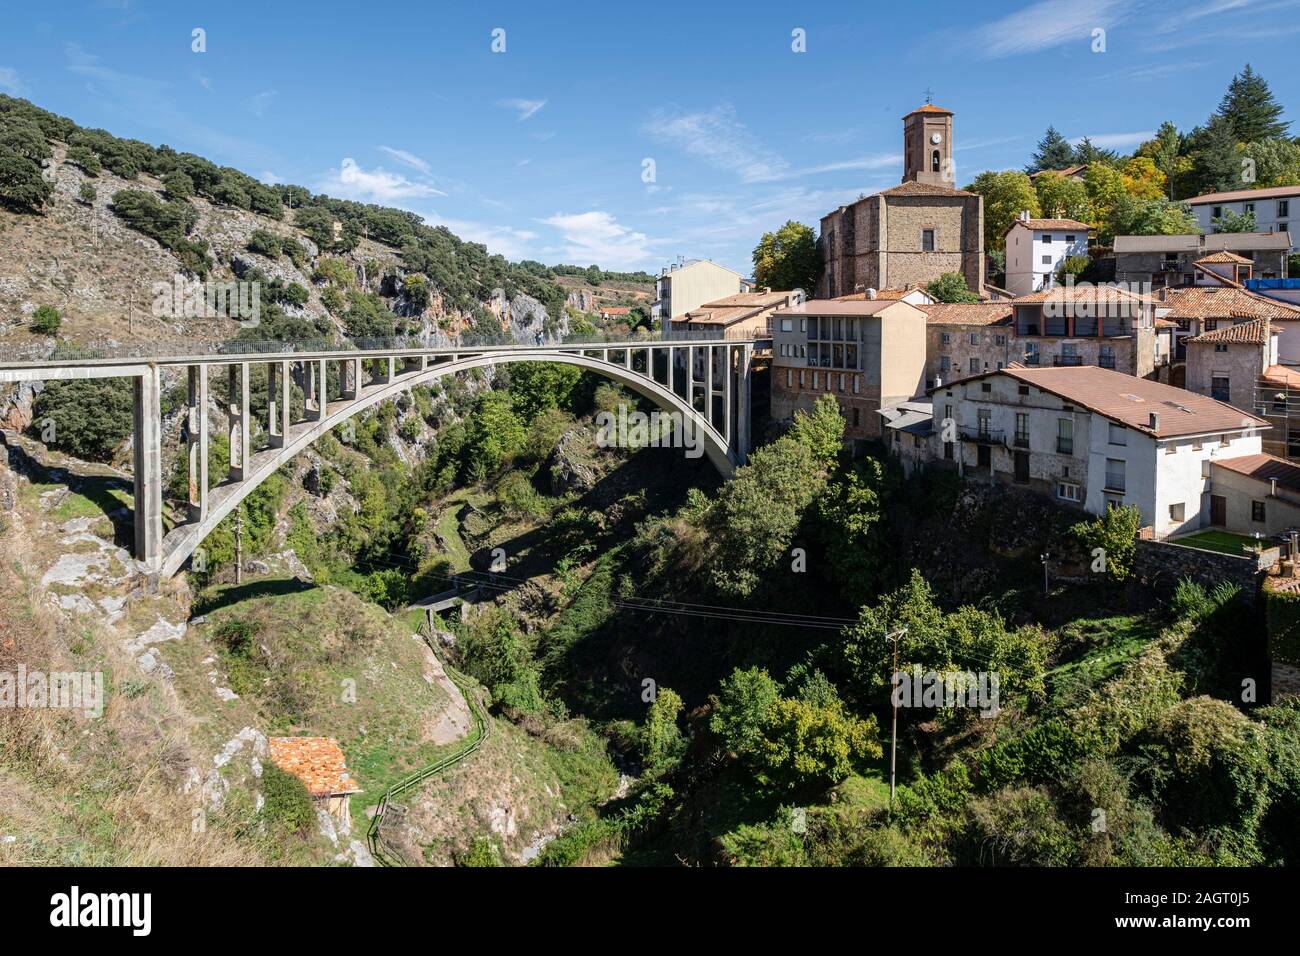 Puente de Hormigón sobre el río Albercos, construido en 1923, Ortigosa de Cameros, La Rioja, Spagna. Foto Stock